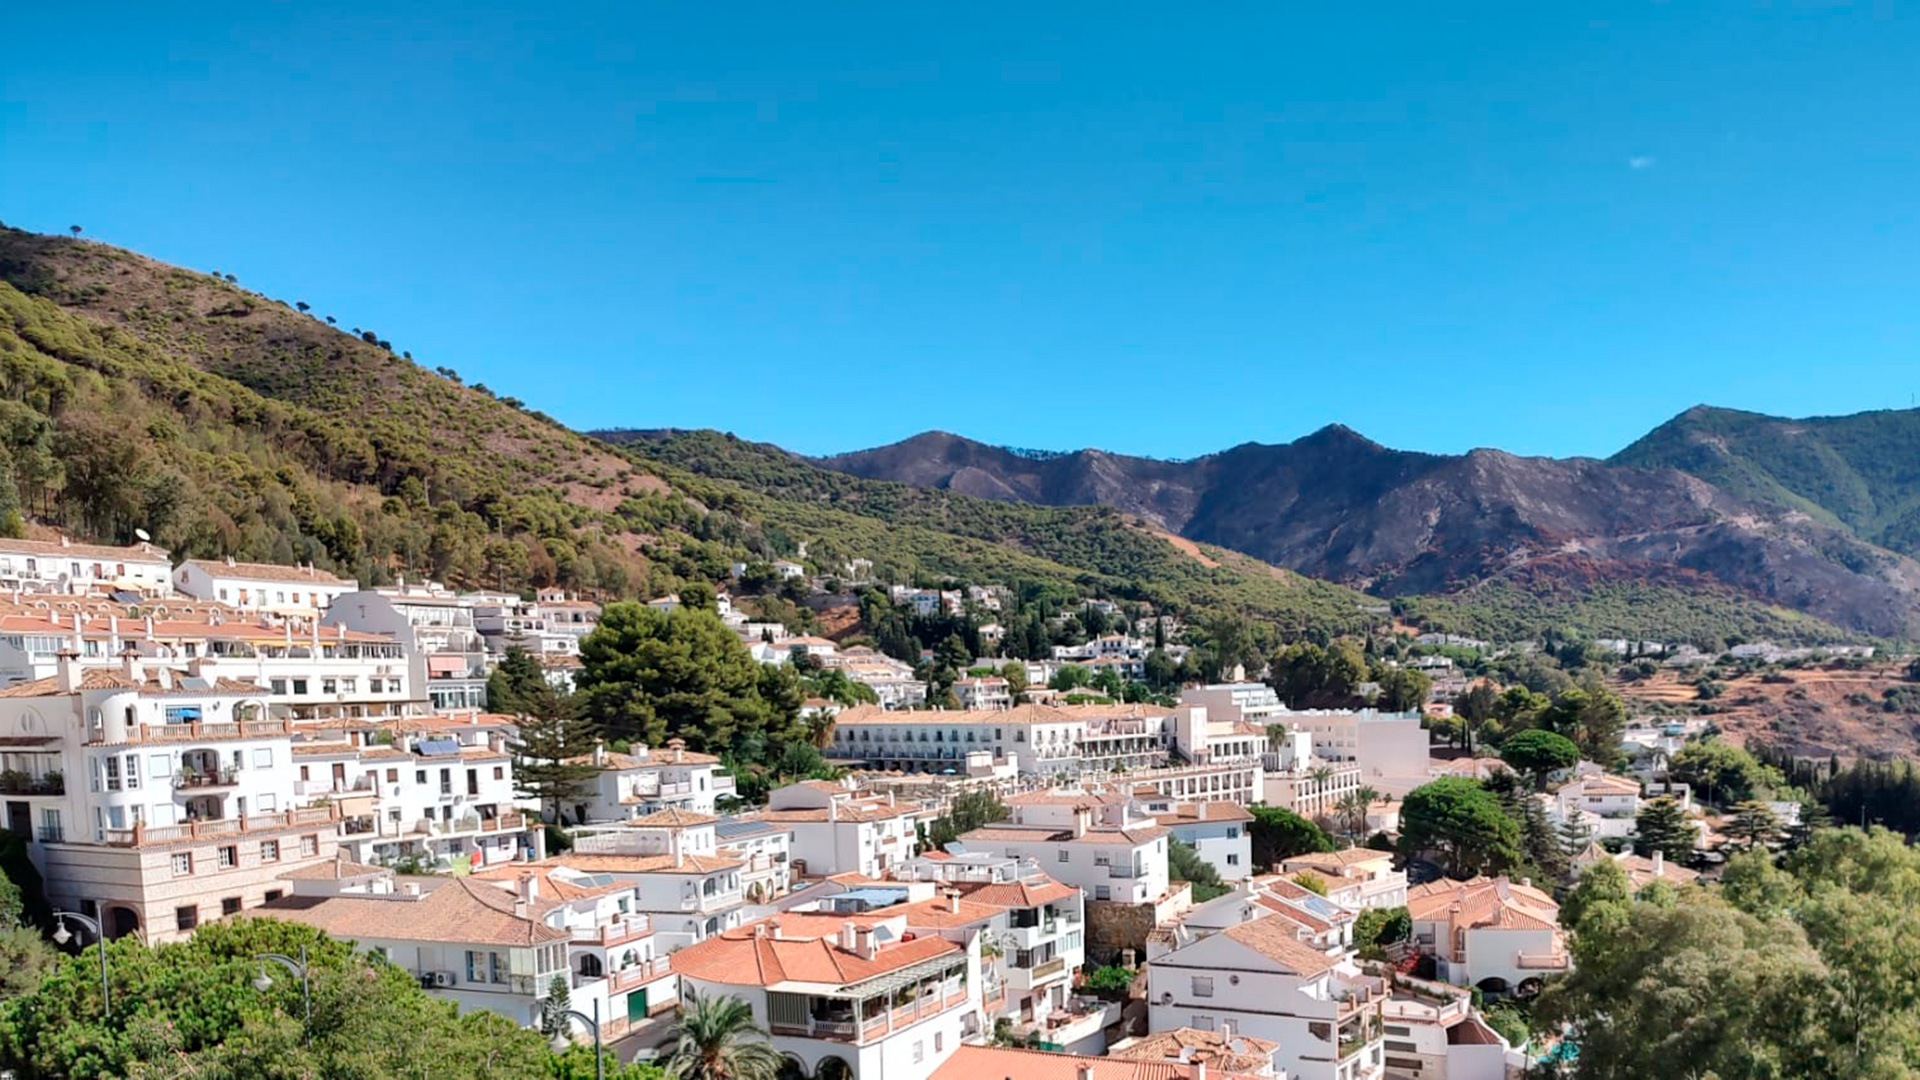 Vista de la localidad de Mijas en la comuna de Andalucía